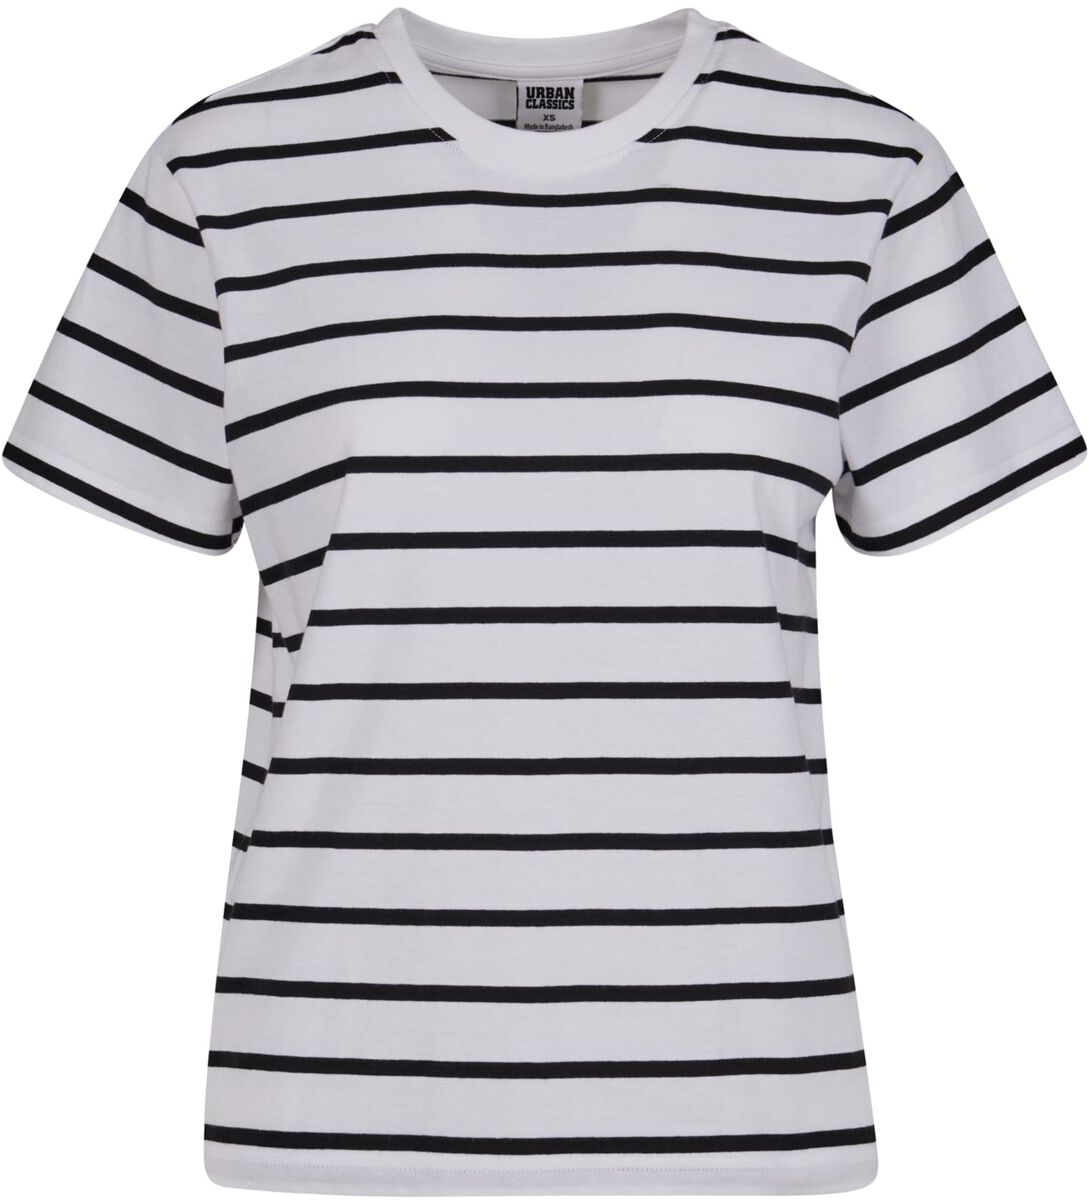 Urban Classics T-Shirt - Ladies Striped Boxy Tee - XS bis 3XL - für Damen - Größe 3XL - schwarz/weiß